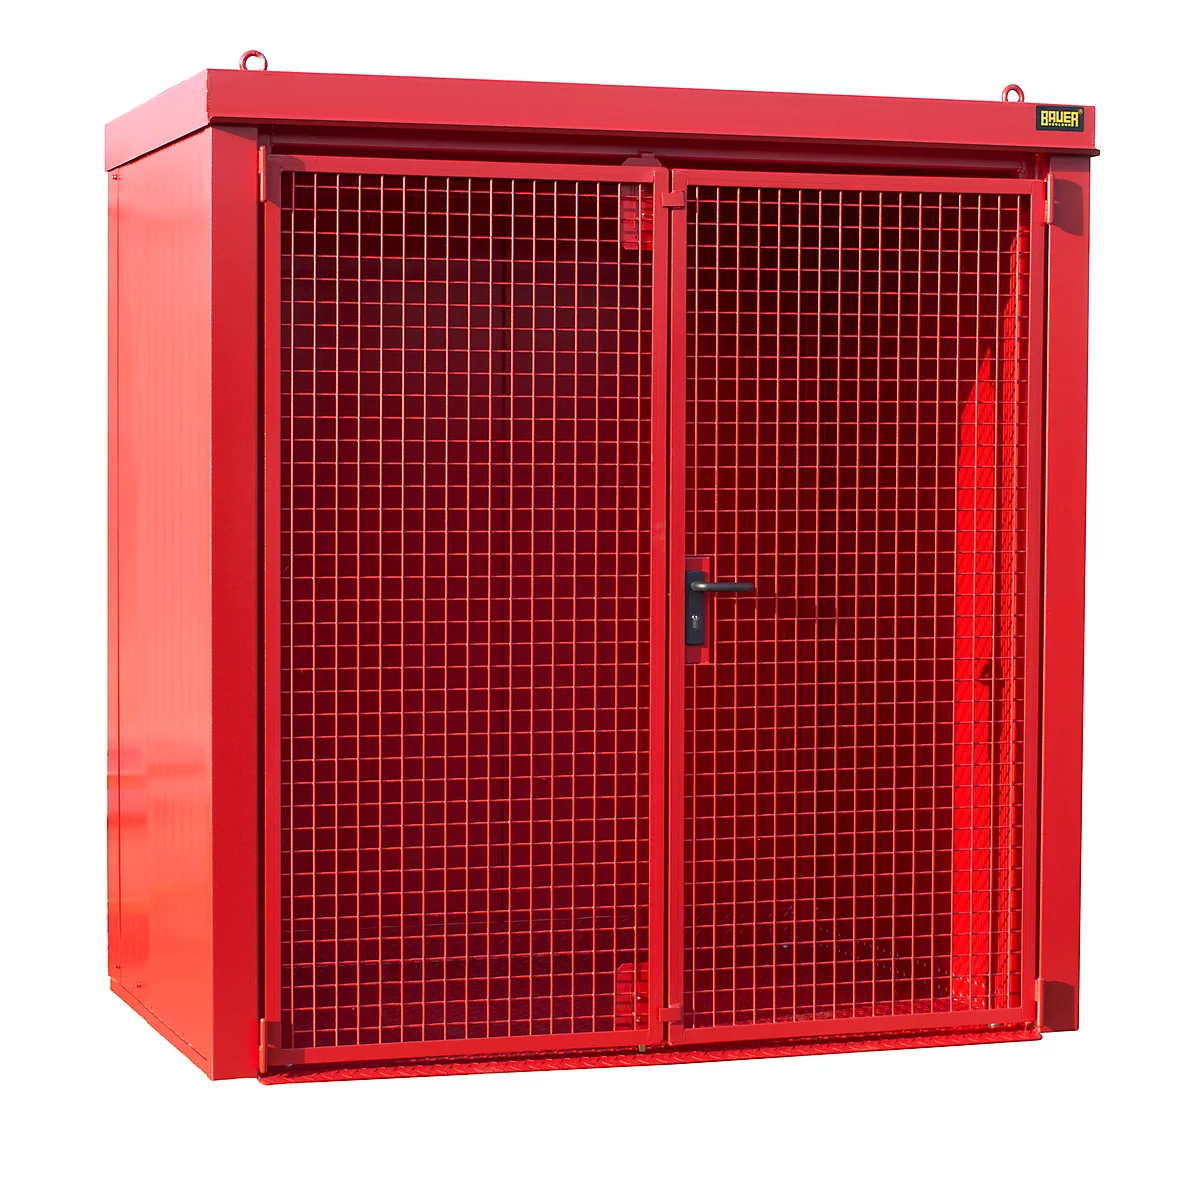 Contenedor de bombonas de gas BAUER GFC-B M1, An 1175 x P 2120 x Al 2265, para 28 bombonas de gas, resistente al fuego, con cerradura, rojo